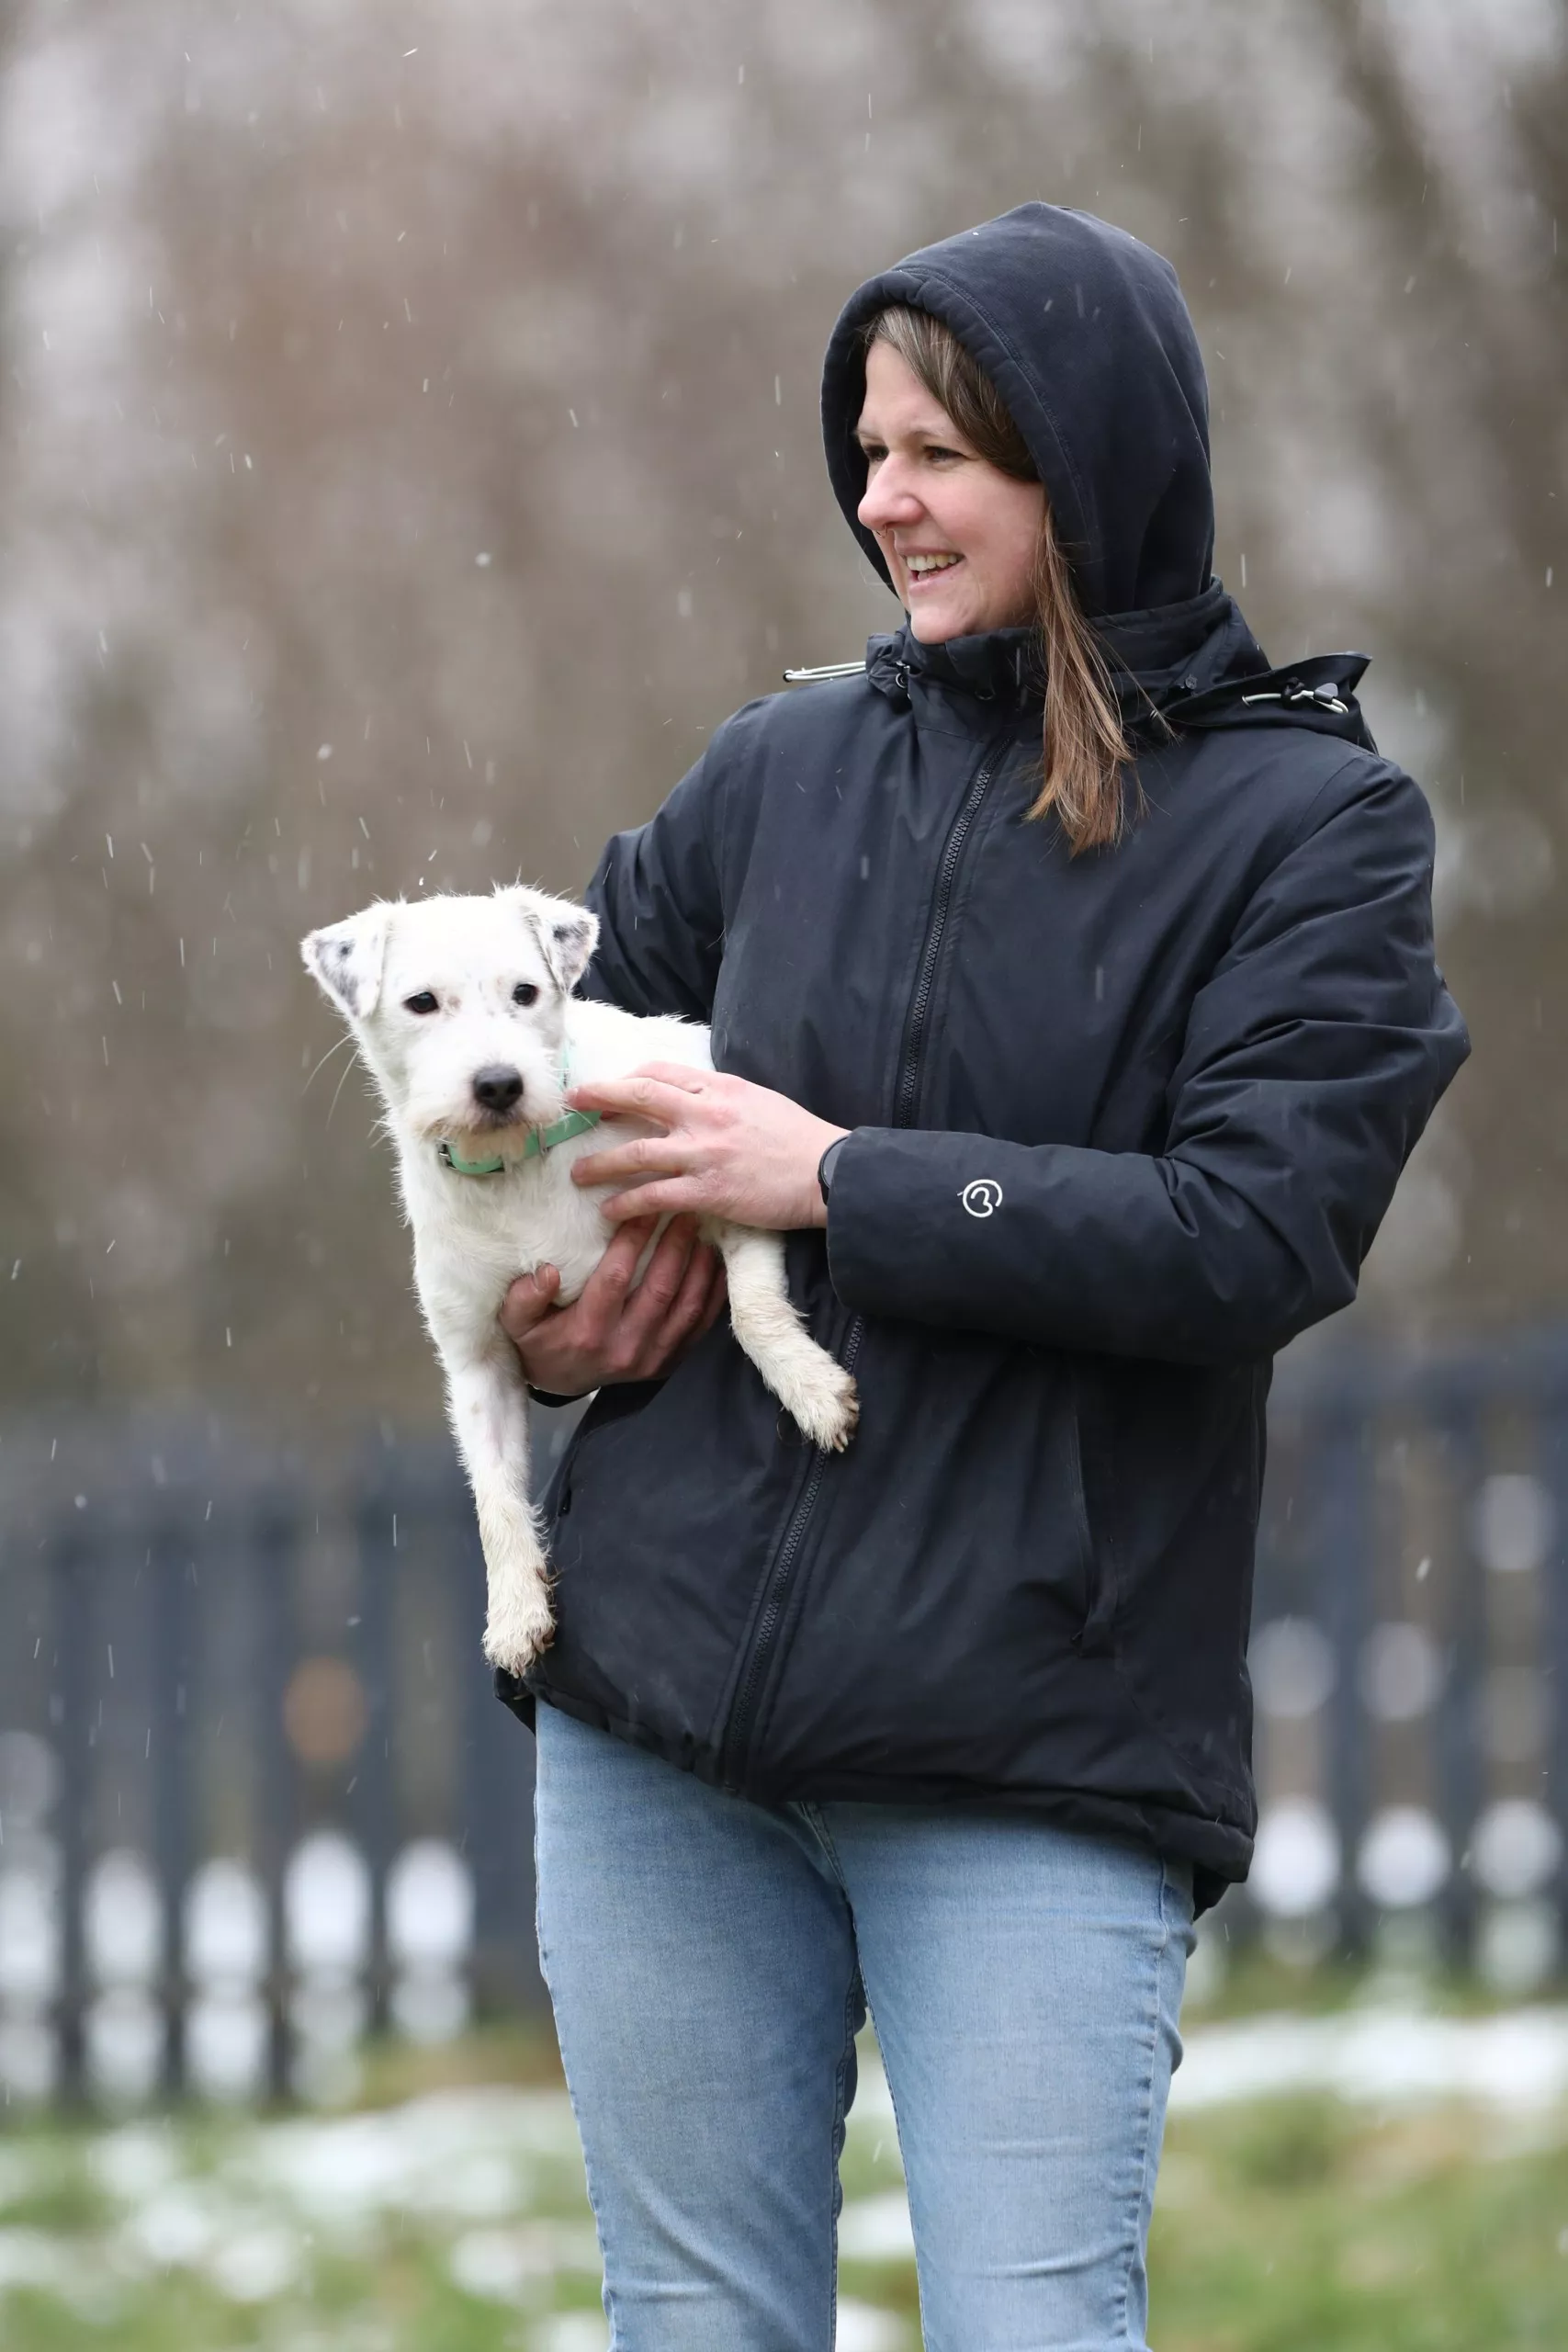 Frau in einer schwarzen Jacke mit Kapuze auf hält einen weißen kleinen Hund auf dem Arm